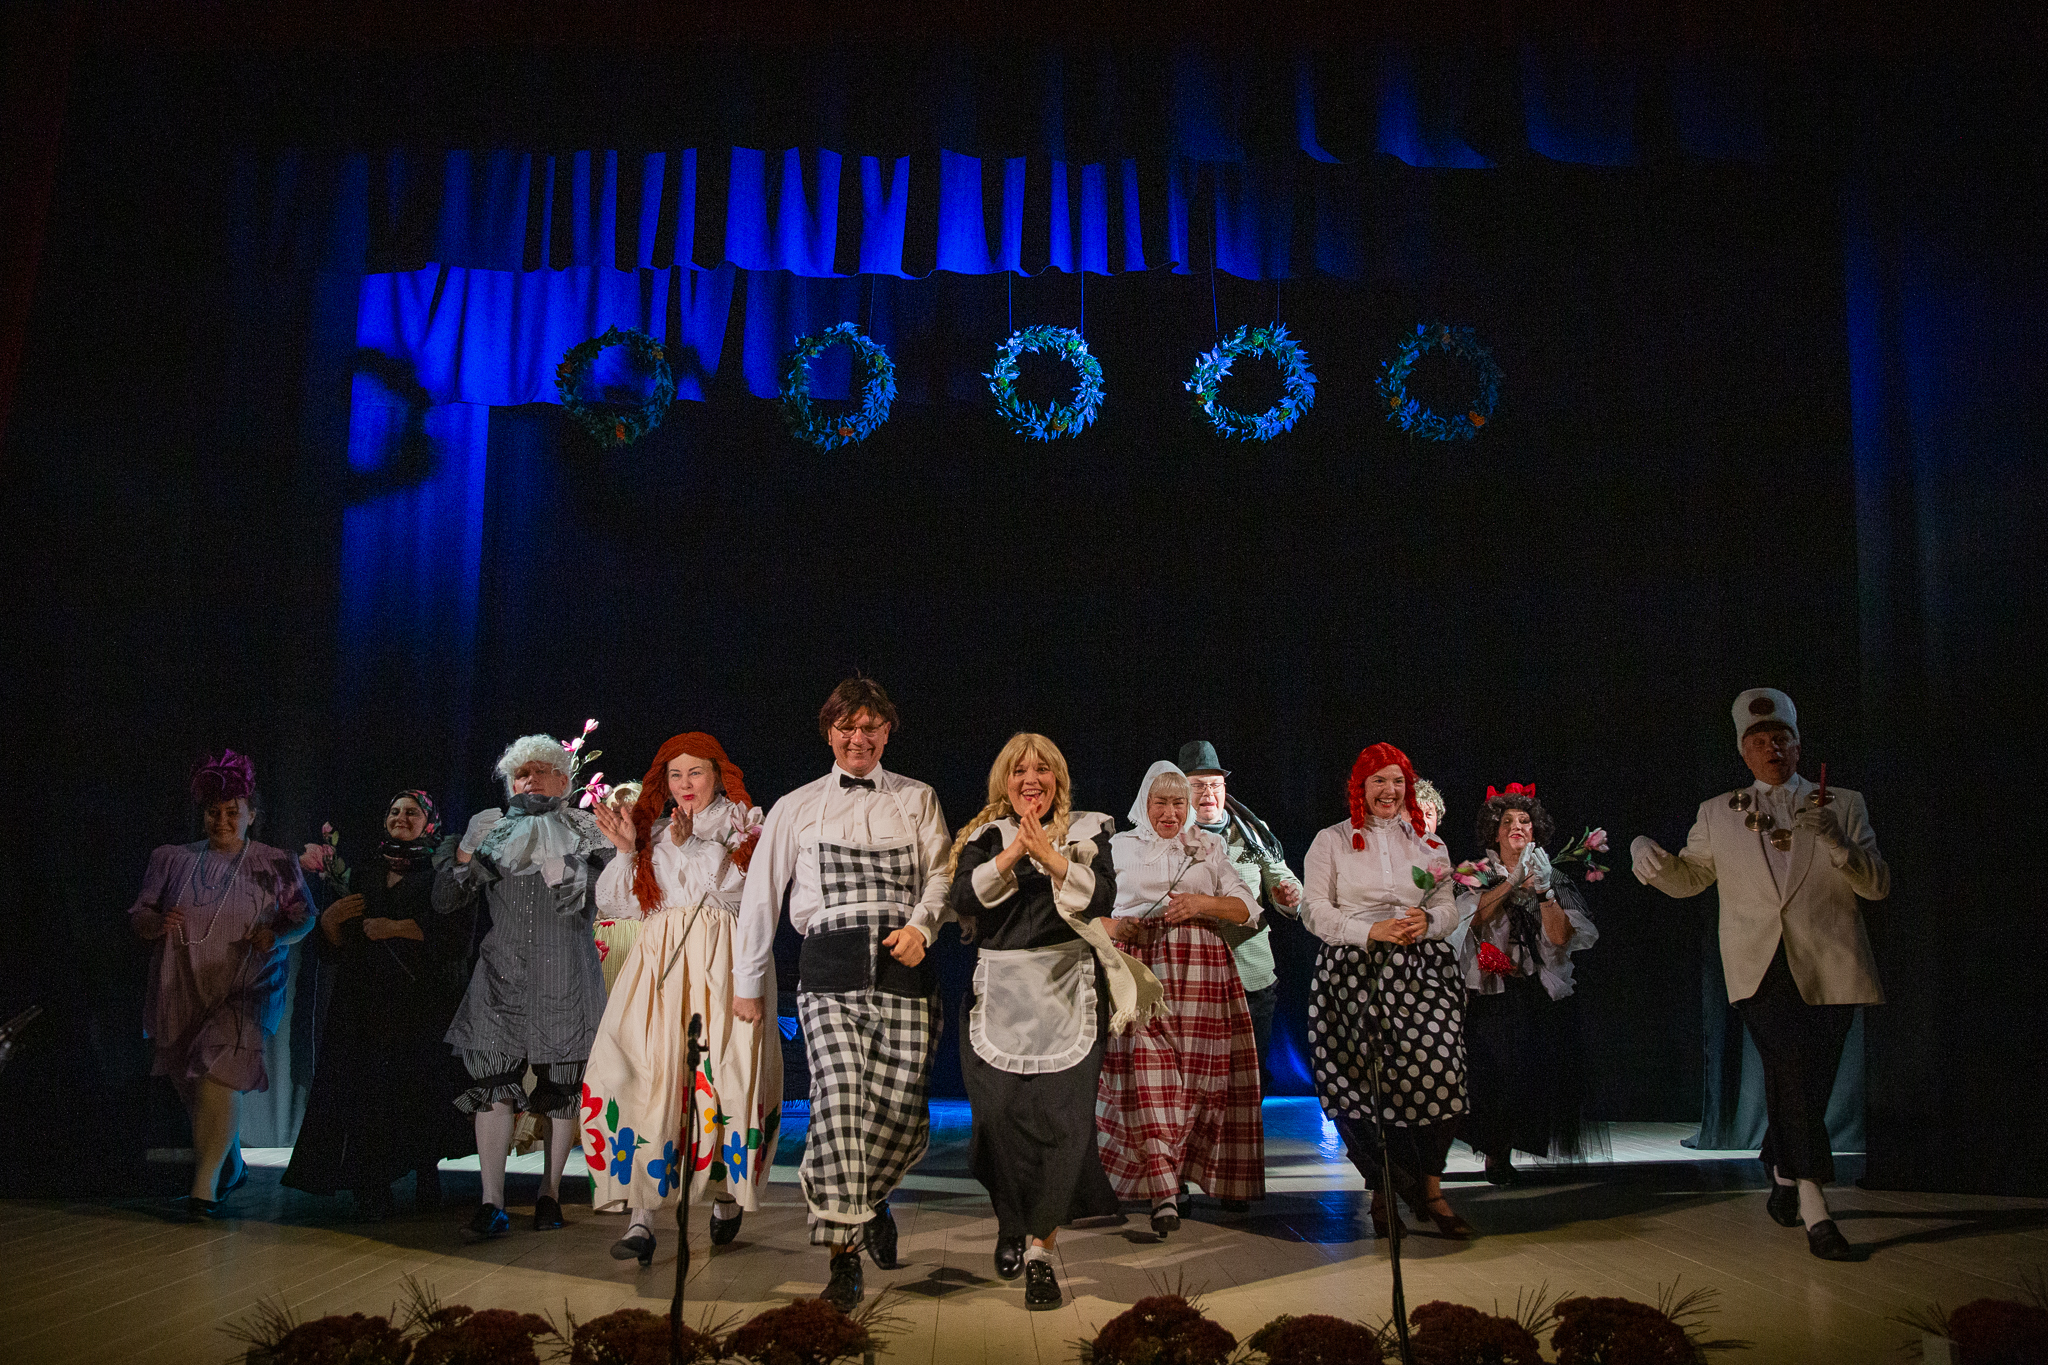 Skirsnemunės teatras „Pakeleivis“ gražia švente paminėjo 10-ies metų veiklos jubiliejų